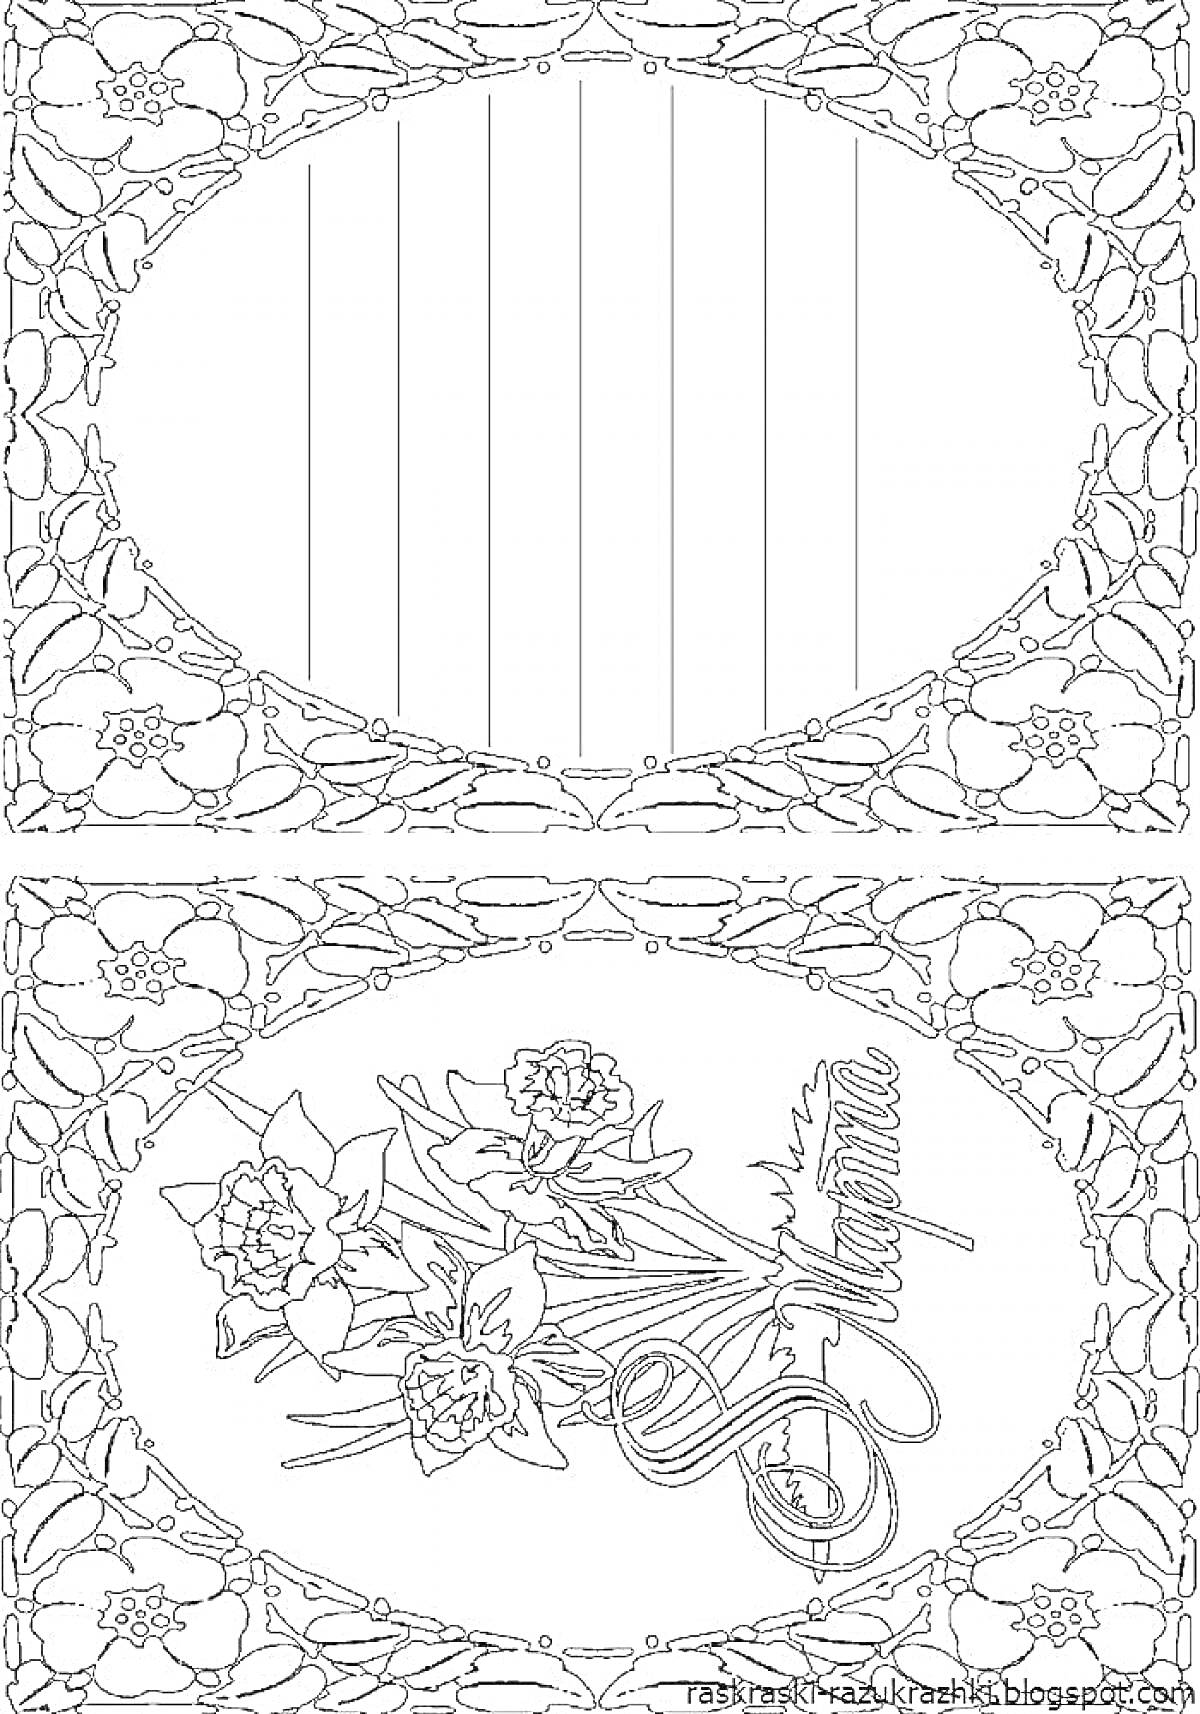 Раскраска открытка с цветочной рамкой, изображением тюльпанов и надписью 